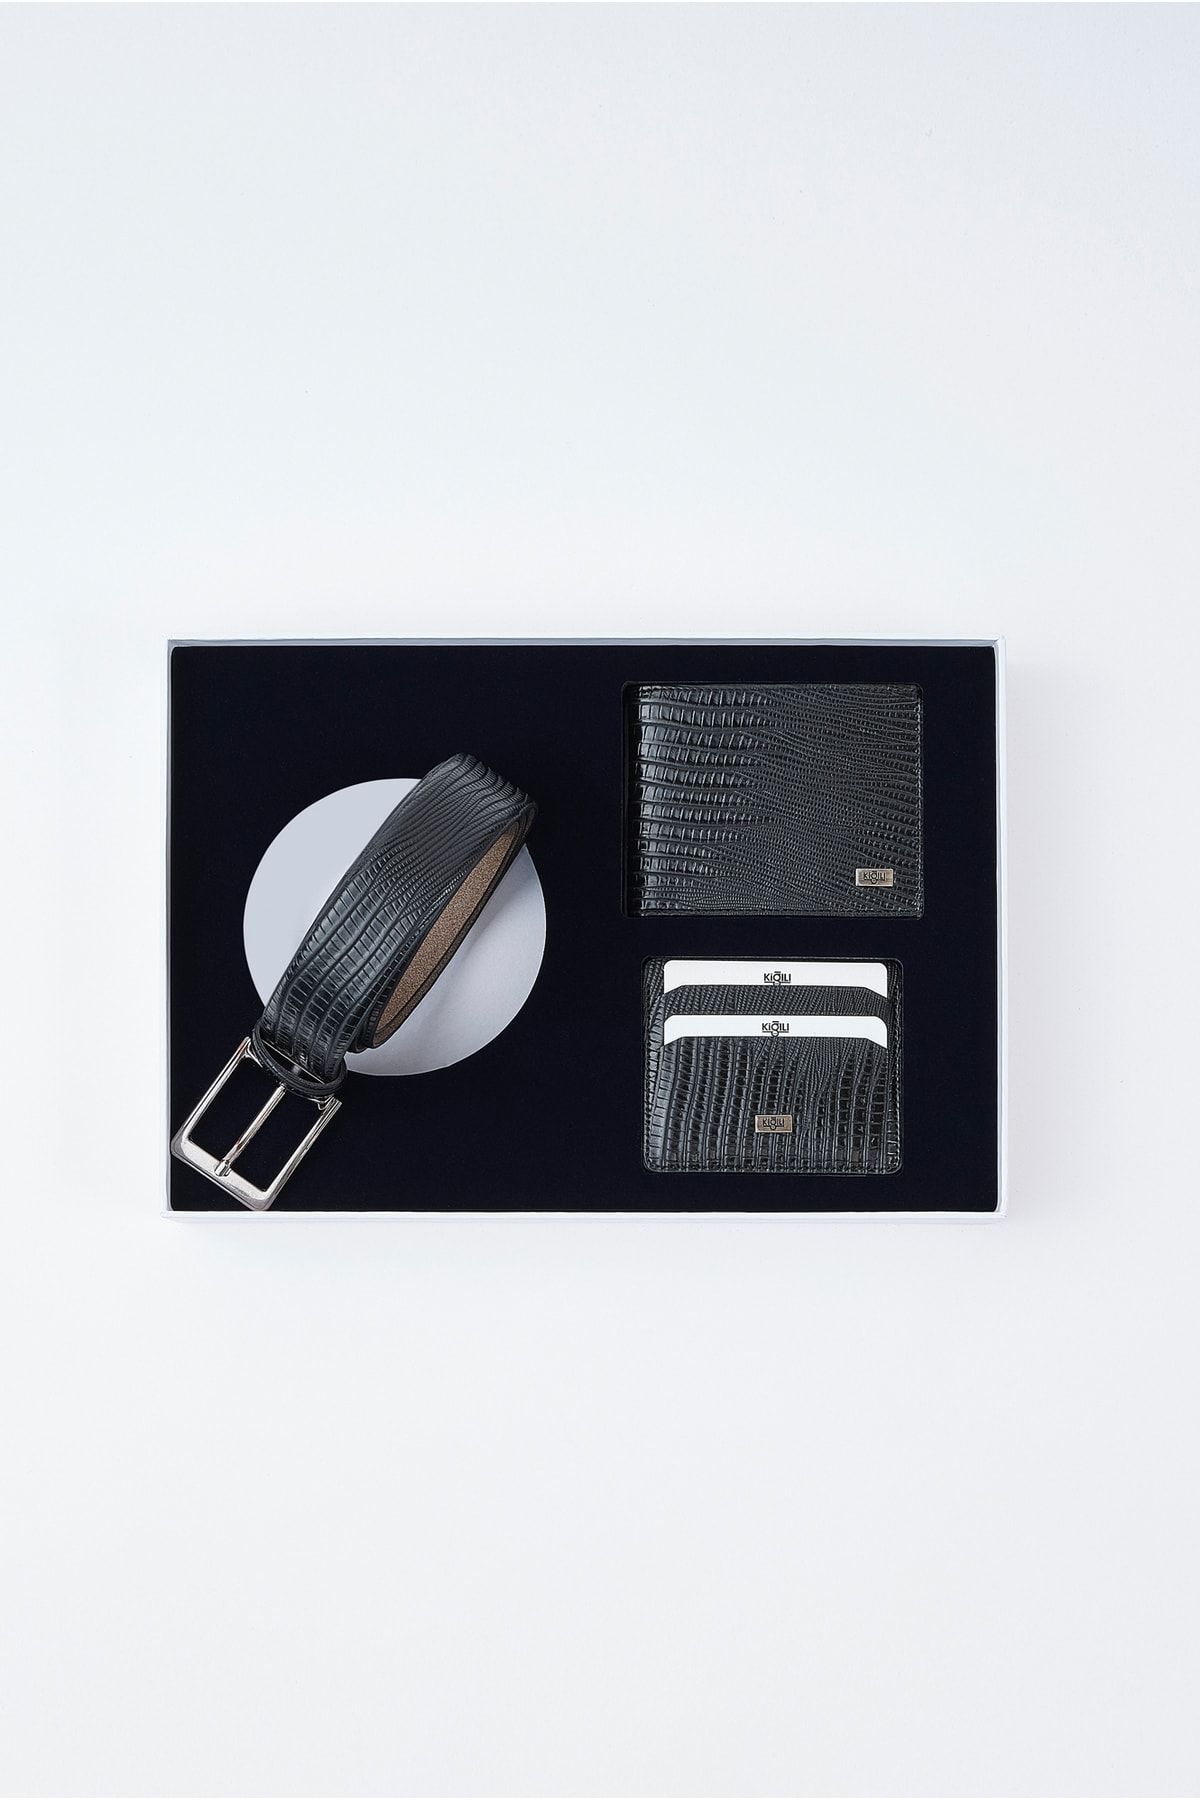 Kiğılı Lezard Desen Kemer & Cüzdan & Kartlık Set